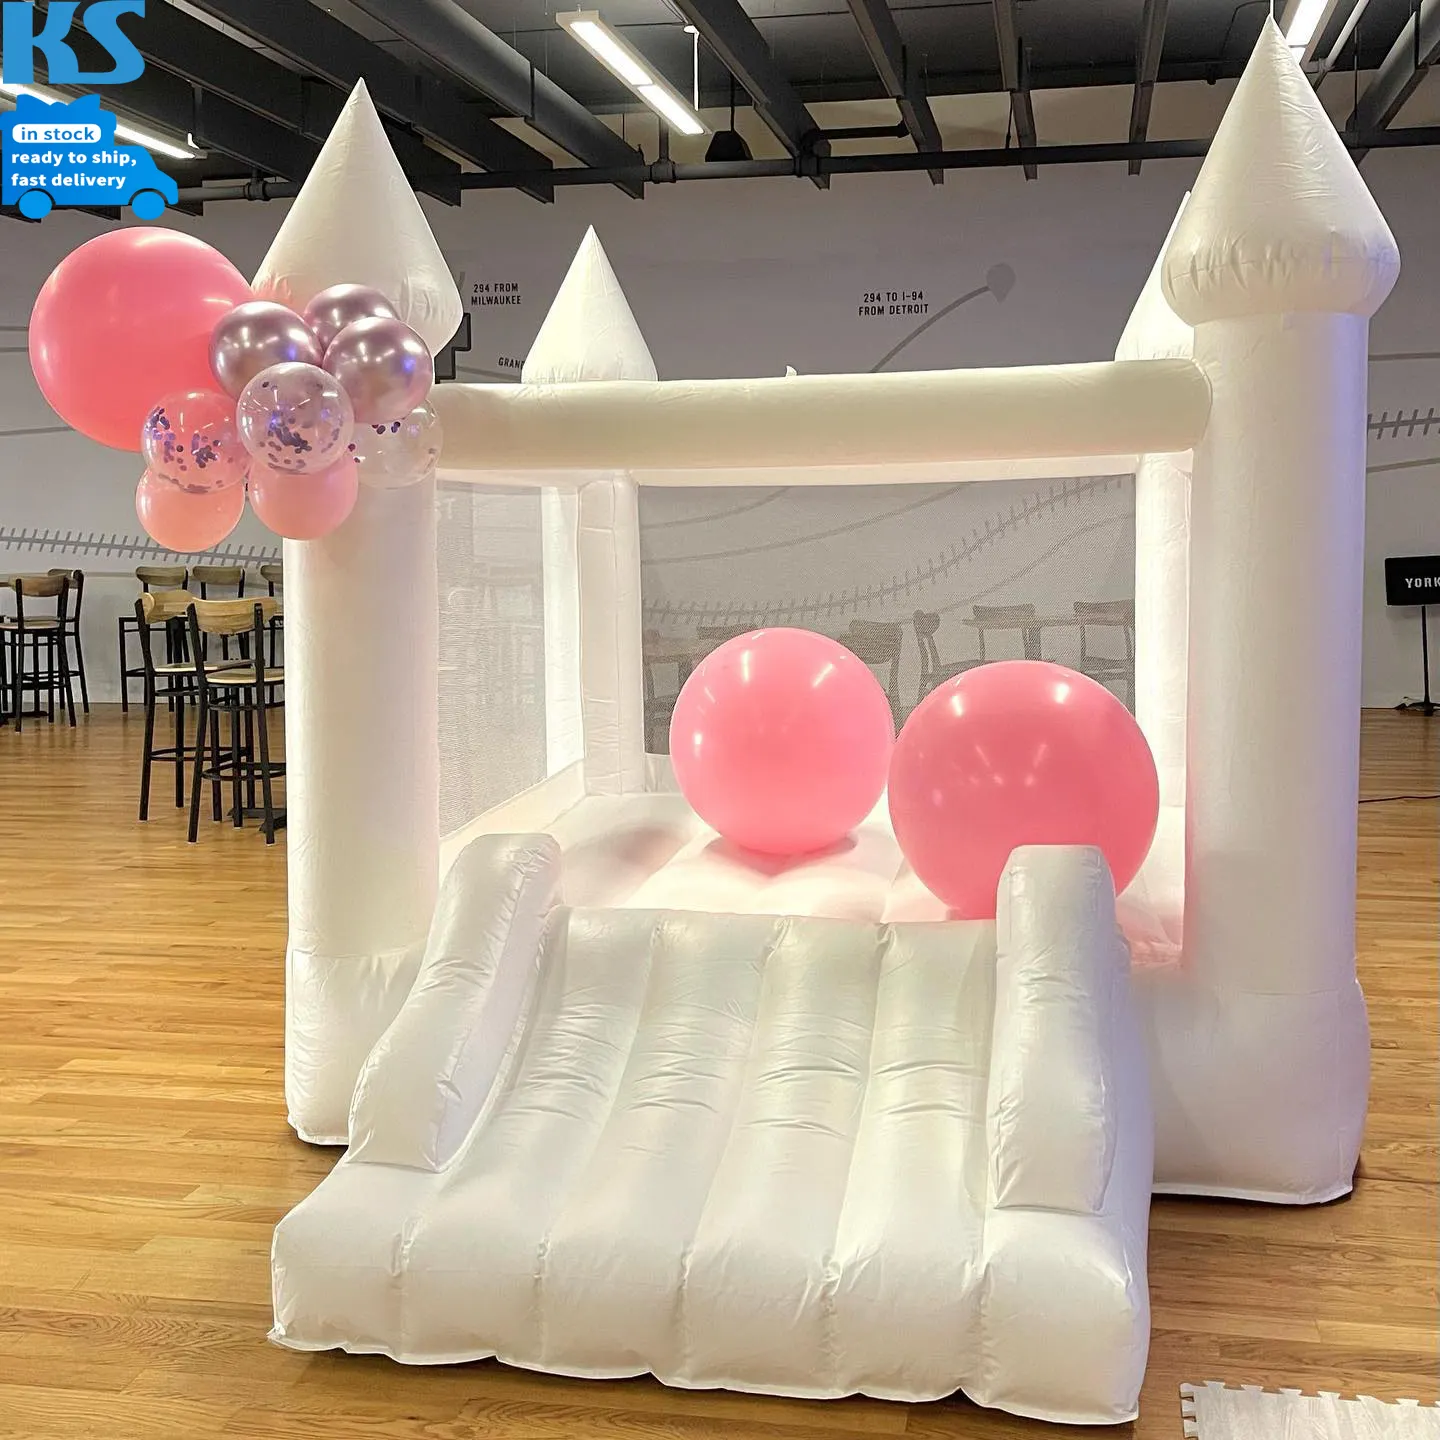 Rumah pantul bahan PVC kecil ukuran kecil bahan PVC komersial putih untuk anak, istana pantul lompat dengan peluncuran acara pesta sewa